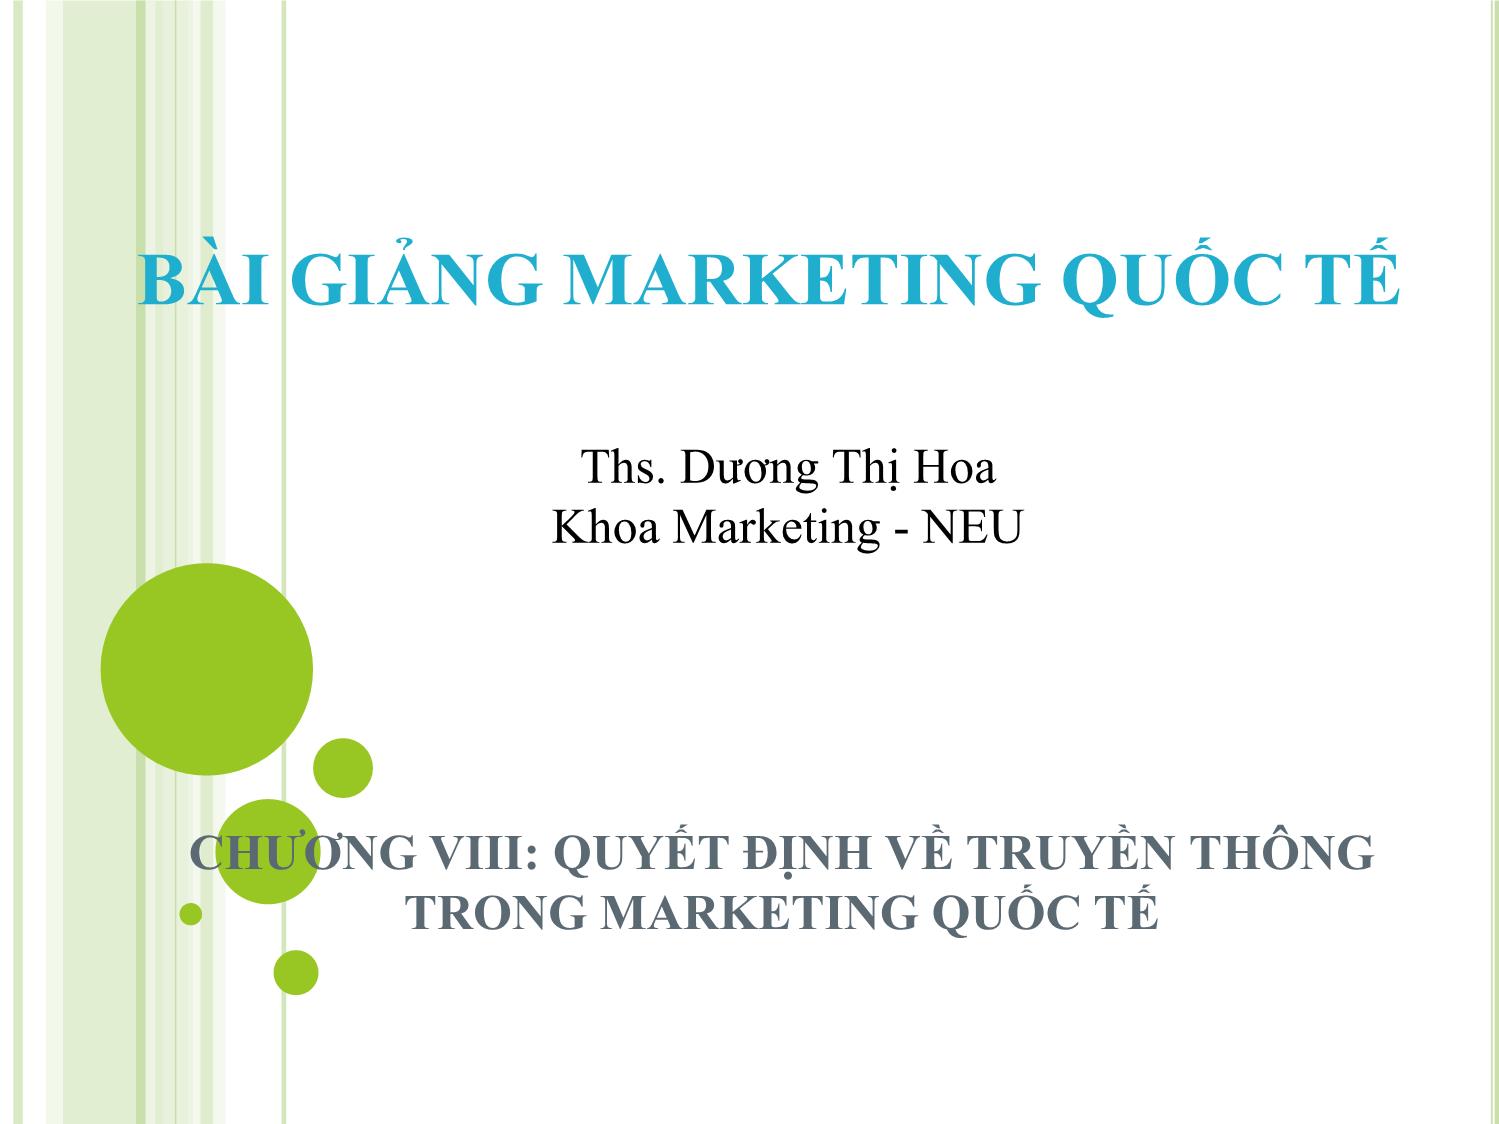 Bài giảng Marketing quốc tế - Chương 8: Quyết định về truyền thông trong marketing quốc tế - Dương Thị Hoa trang 1